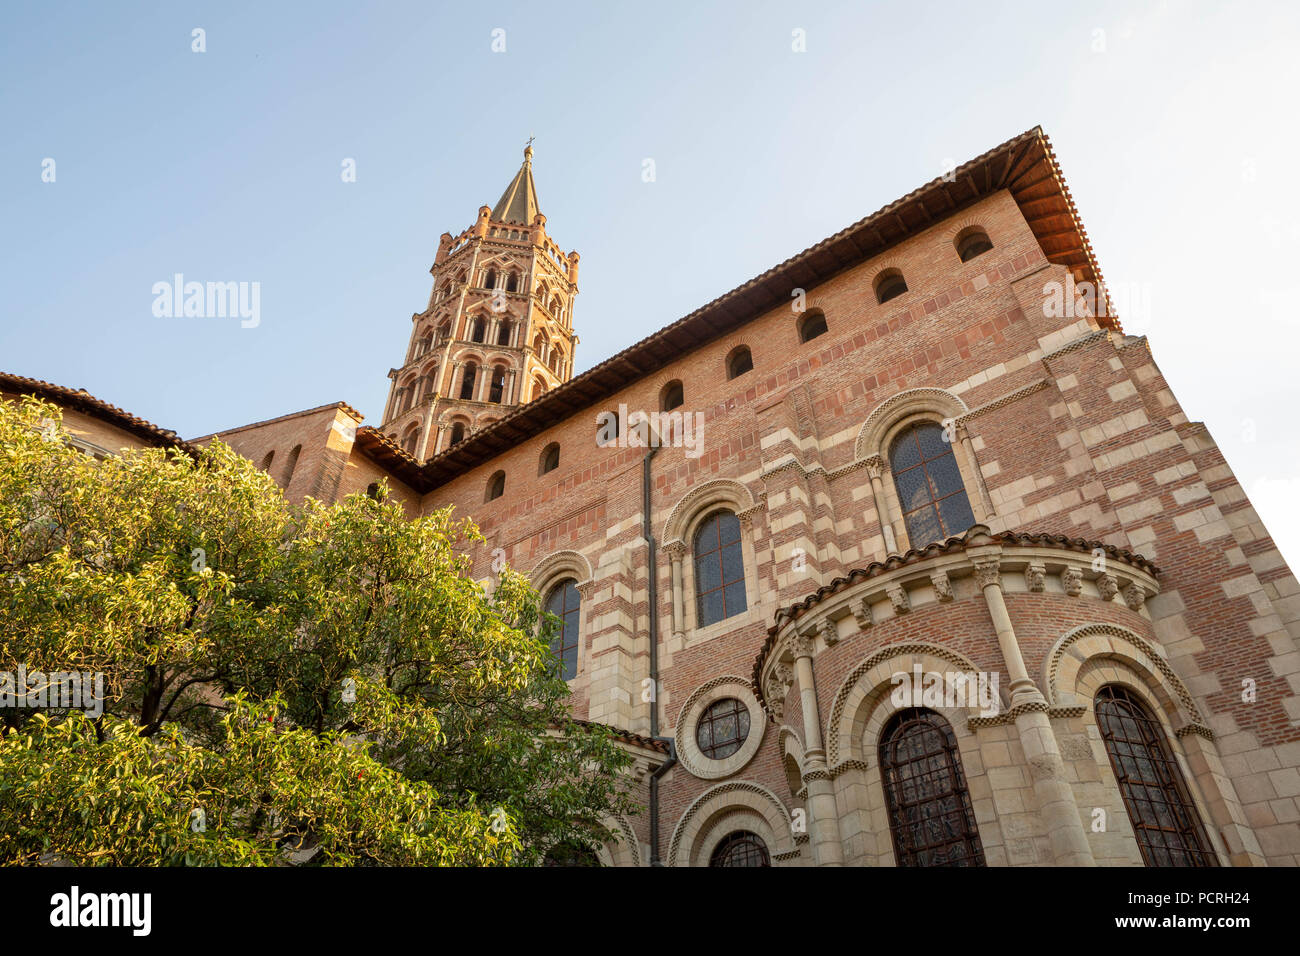 Francia, Toulouse - JULI 9, 2018: Basilica Saint-Sernin. Un sito Patrimonio Mondiale dell'UNESCO sul Camino de Santiago o pellegrinaggio di Compostela. Foto Stock